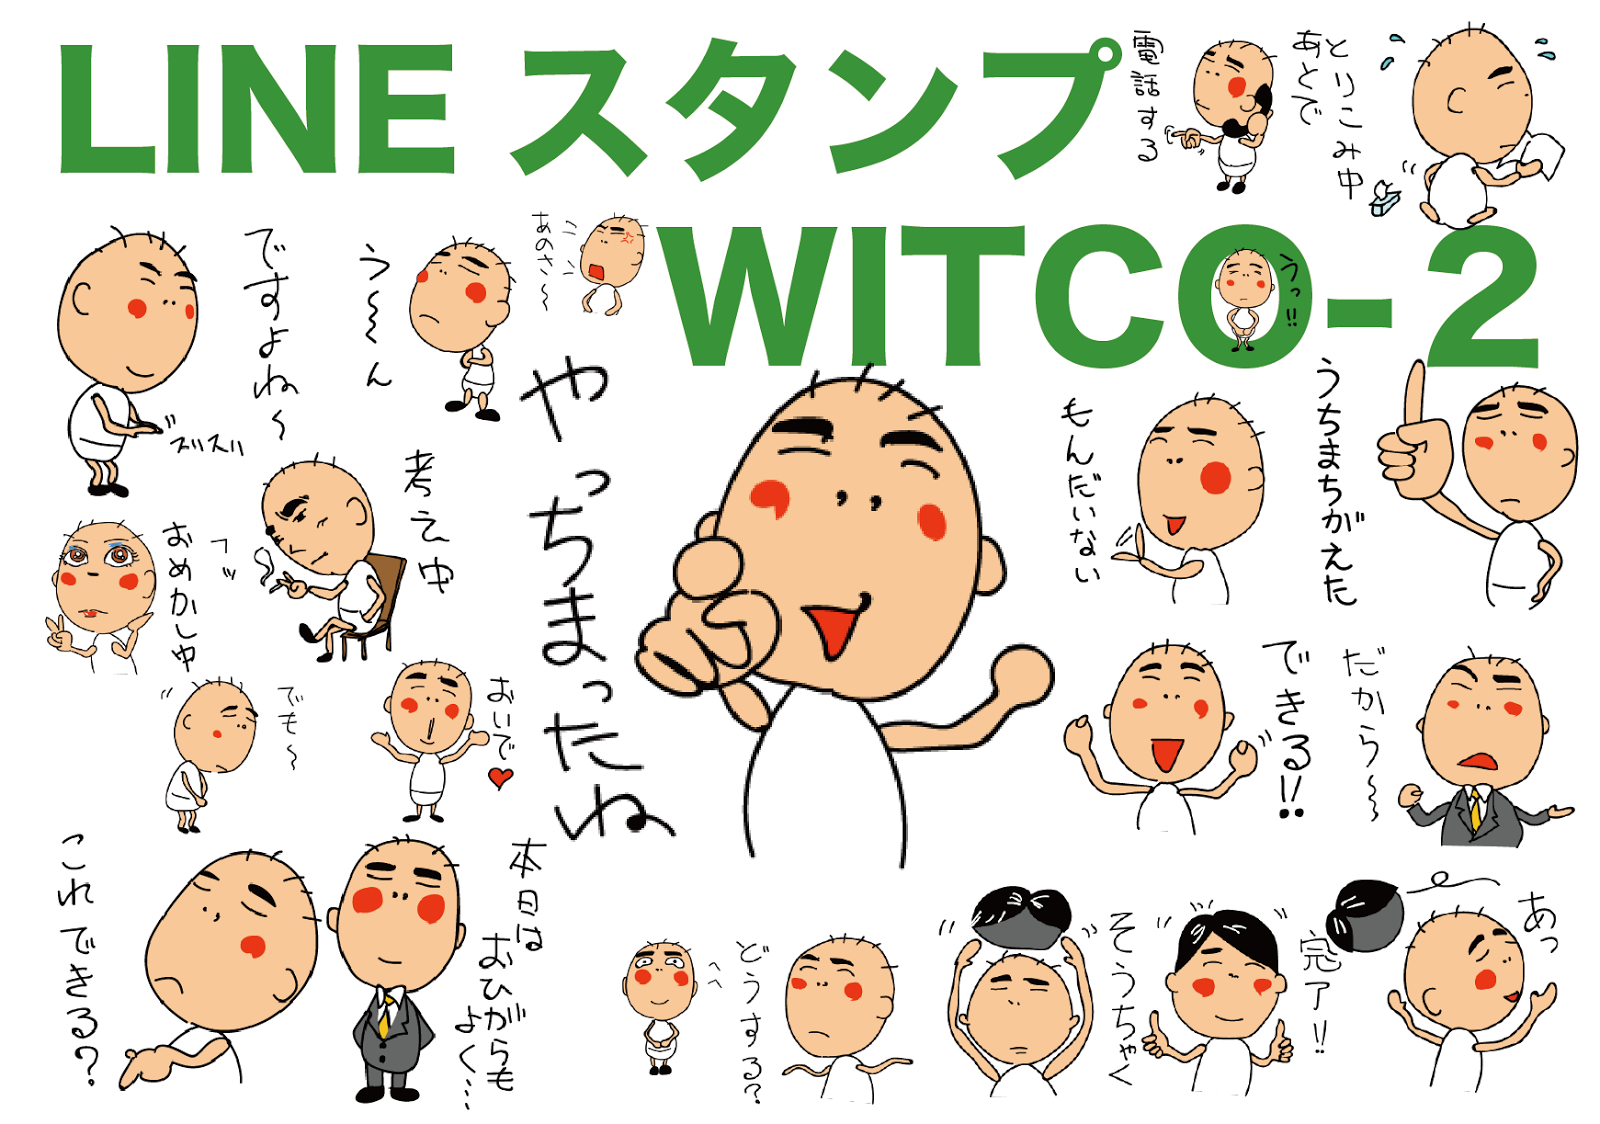 LINEスタンプ【ウィッコ 2】WITCO 2